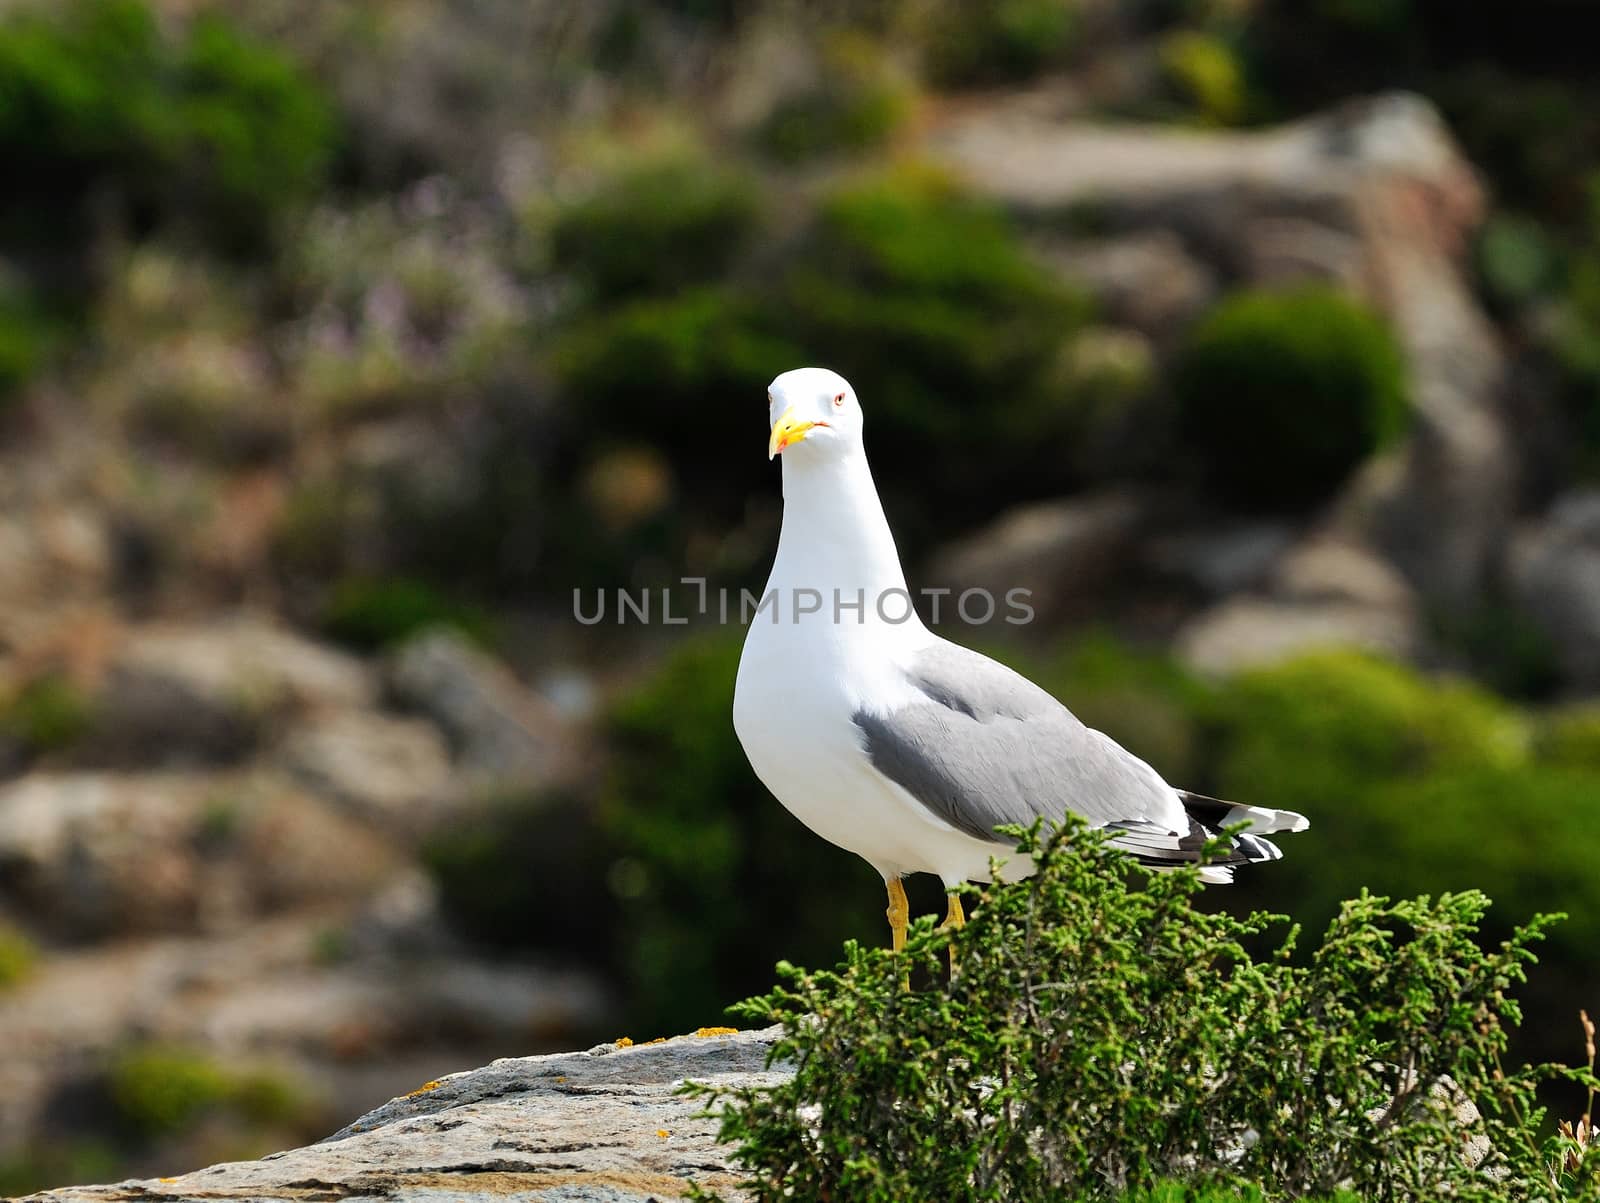 The seagull, sea bird par excellence, posing on a rock.